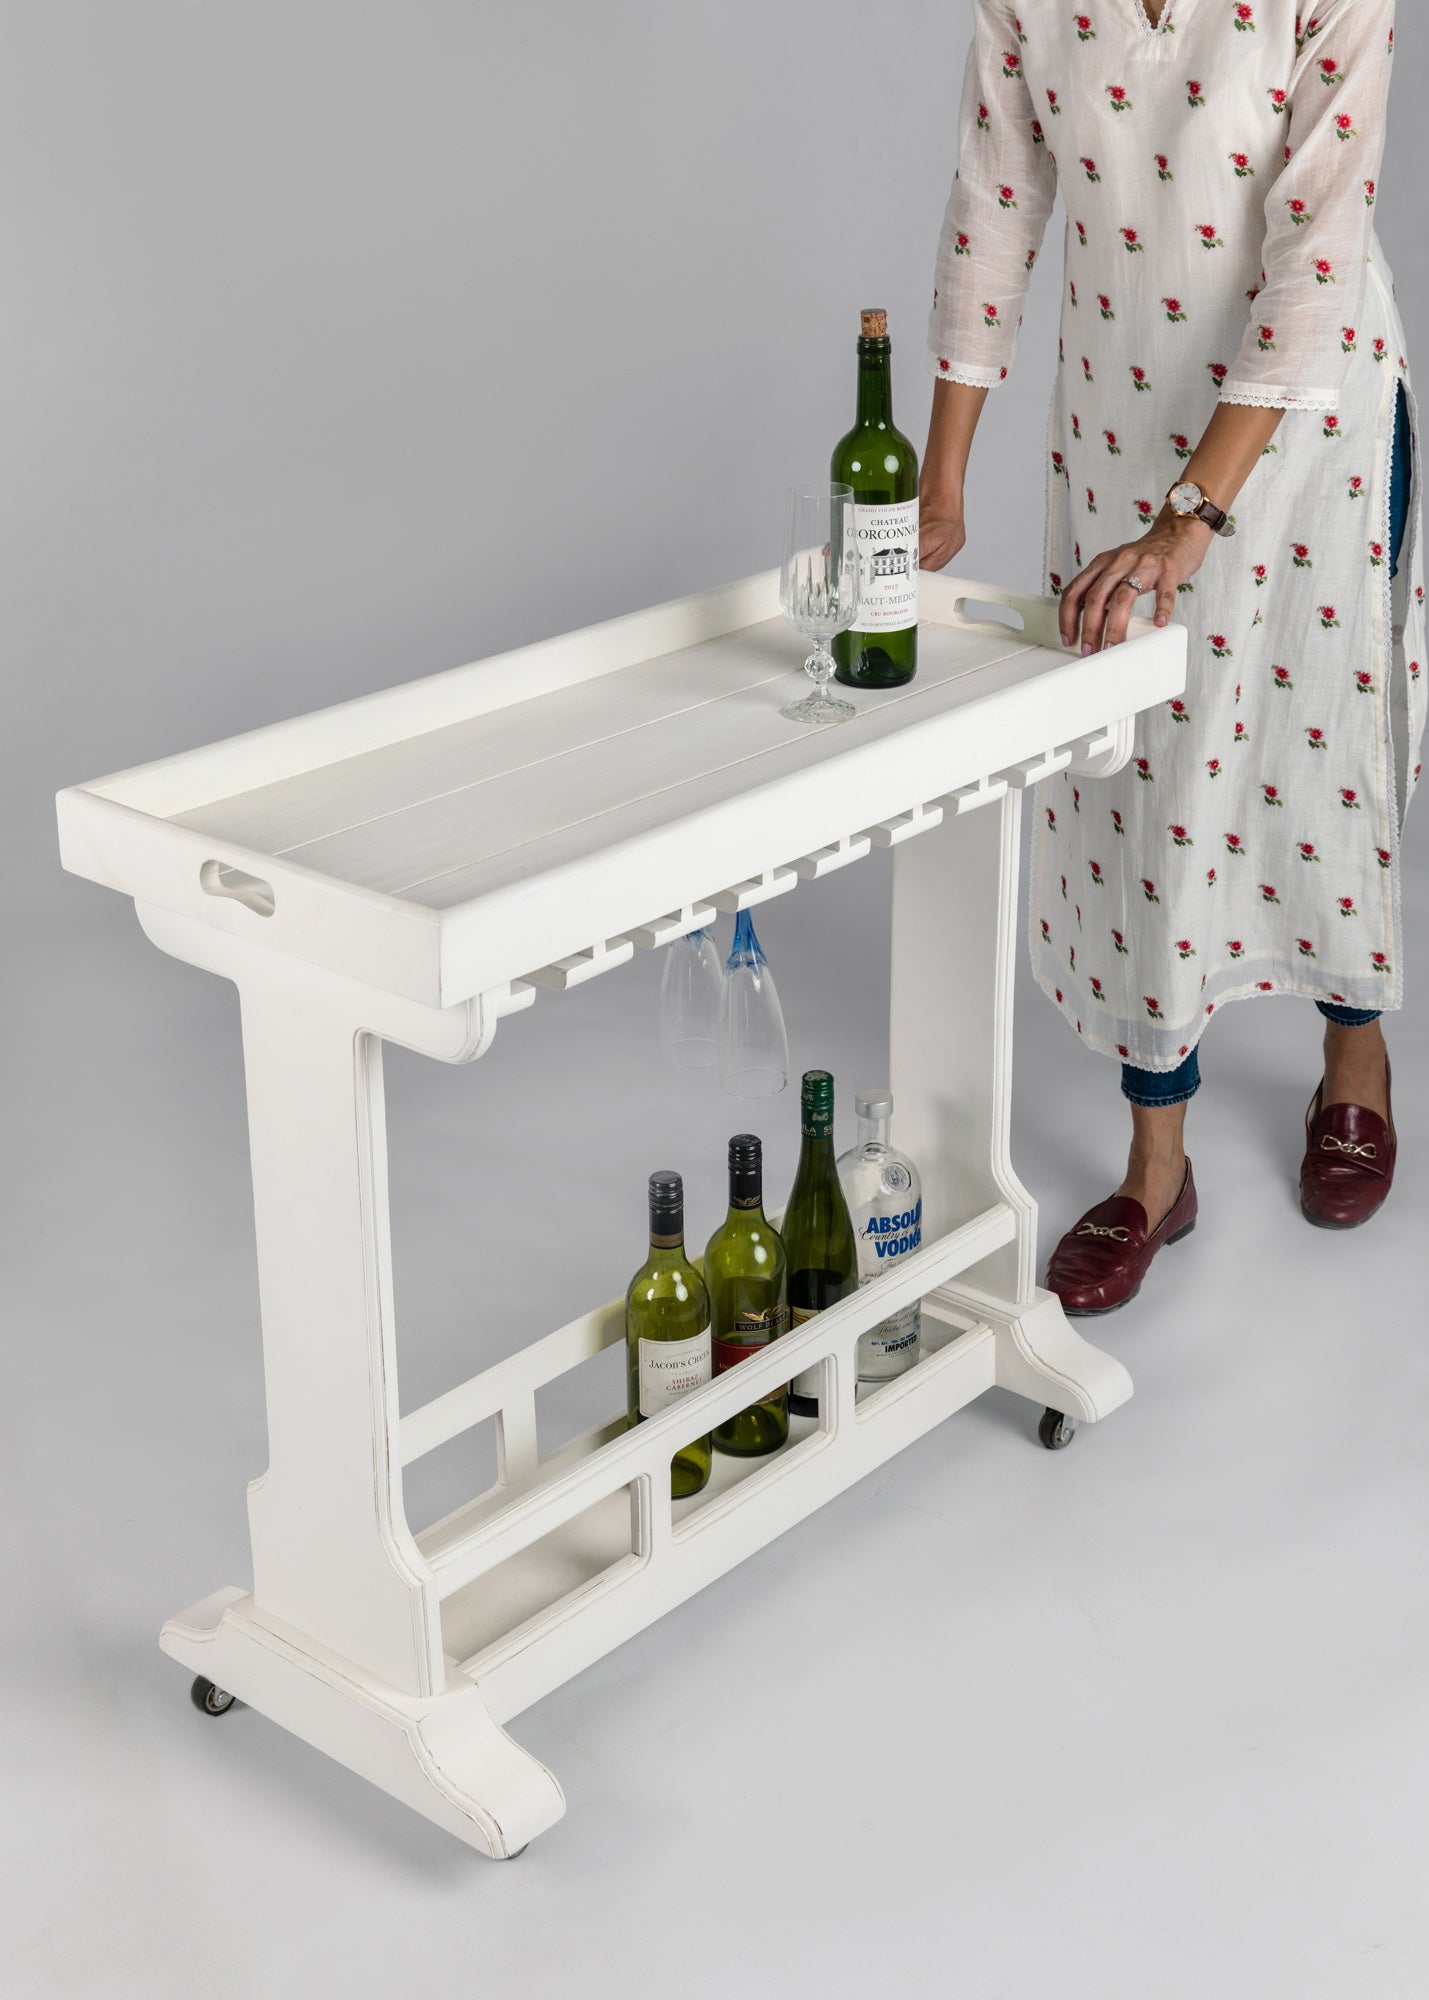 Ramon Portable Bar Table - Savana Living - One With Wood